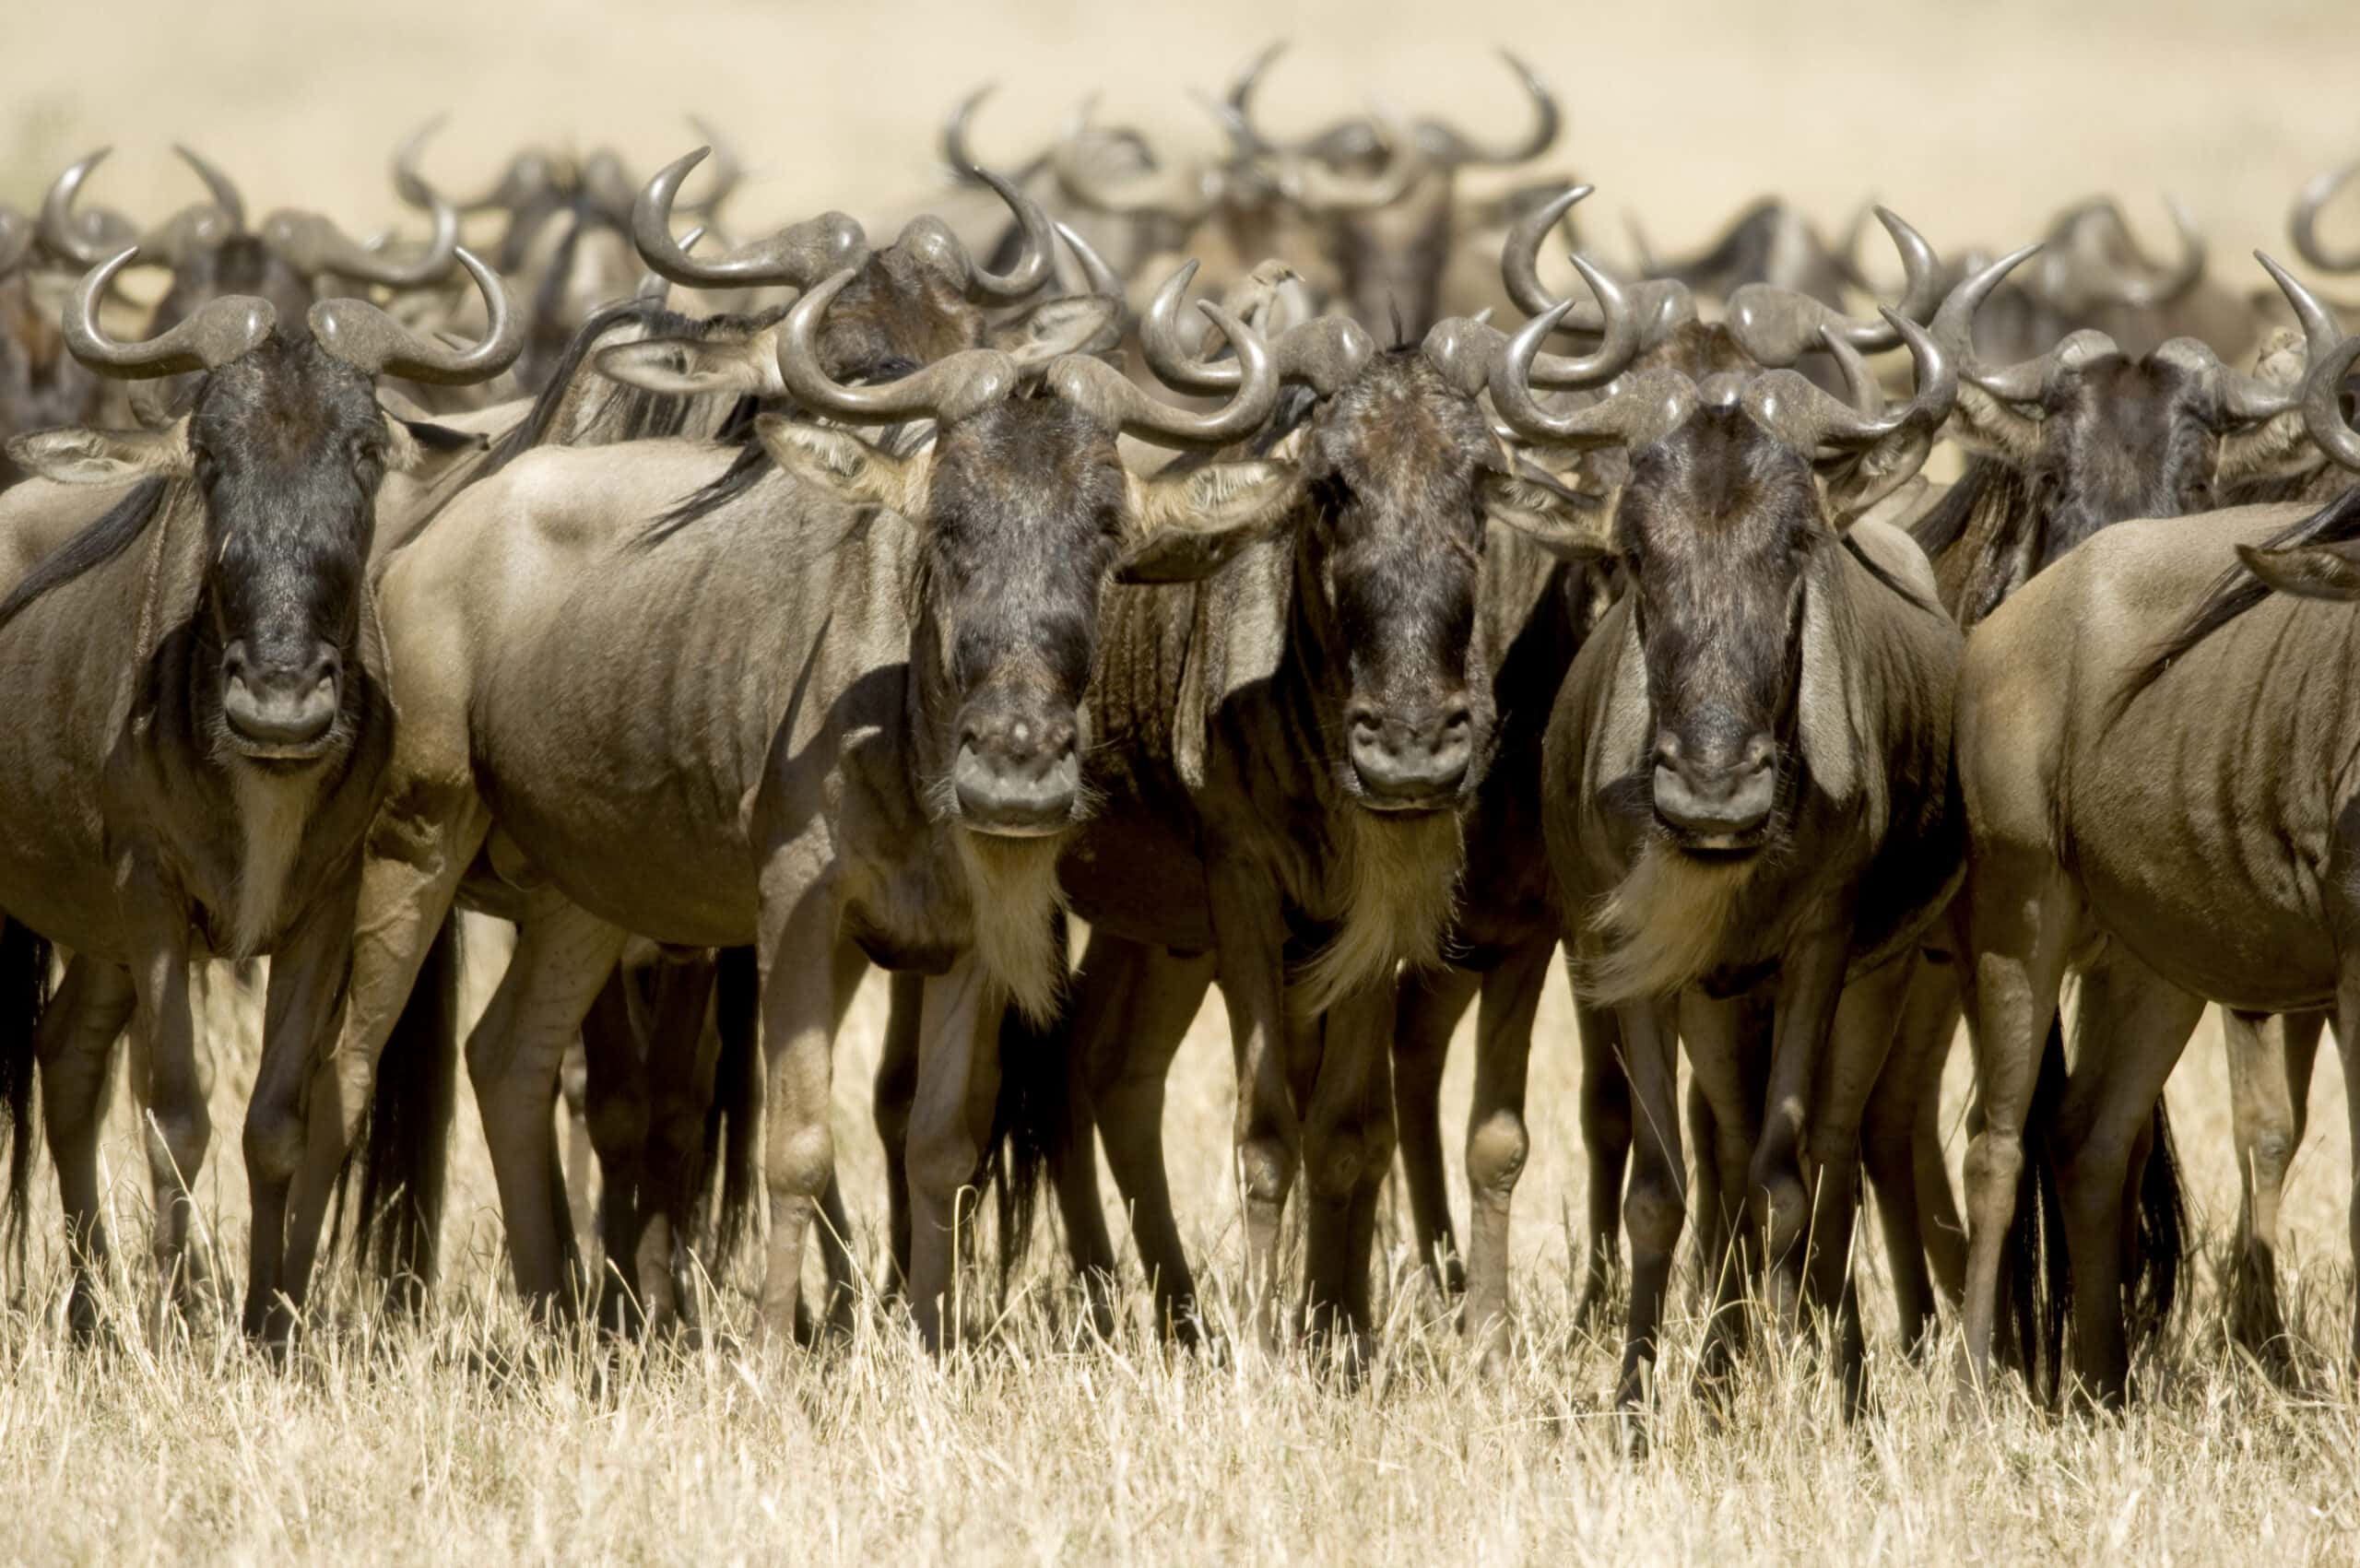 wildebeest masai mara kenya 2021 08 26 18 00 22 utc 2 scaled